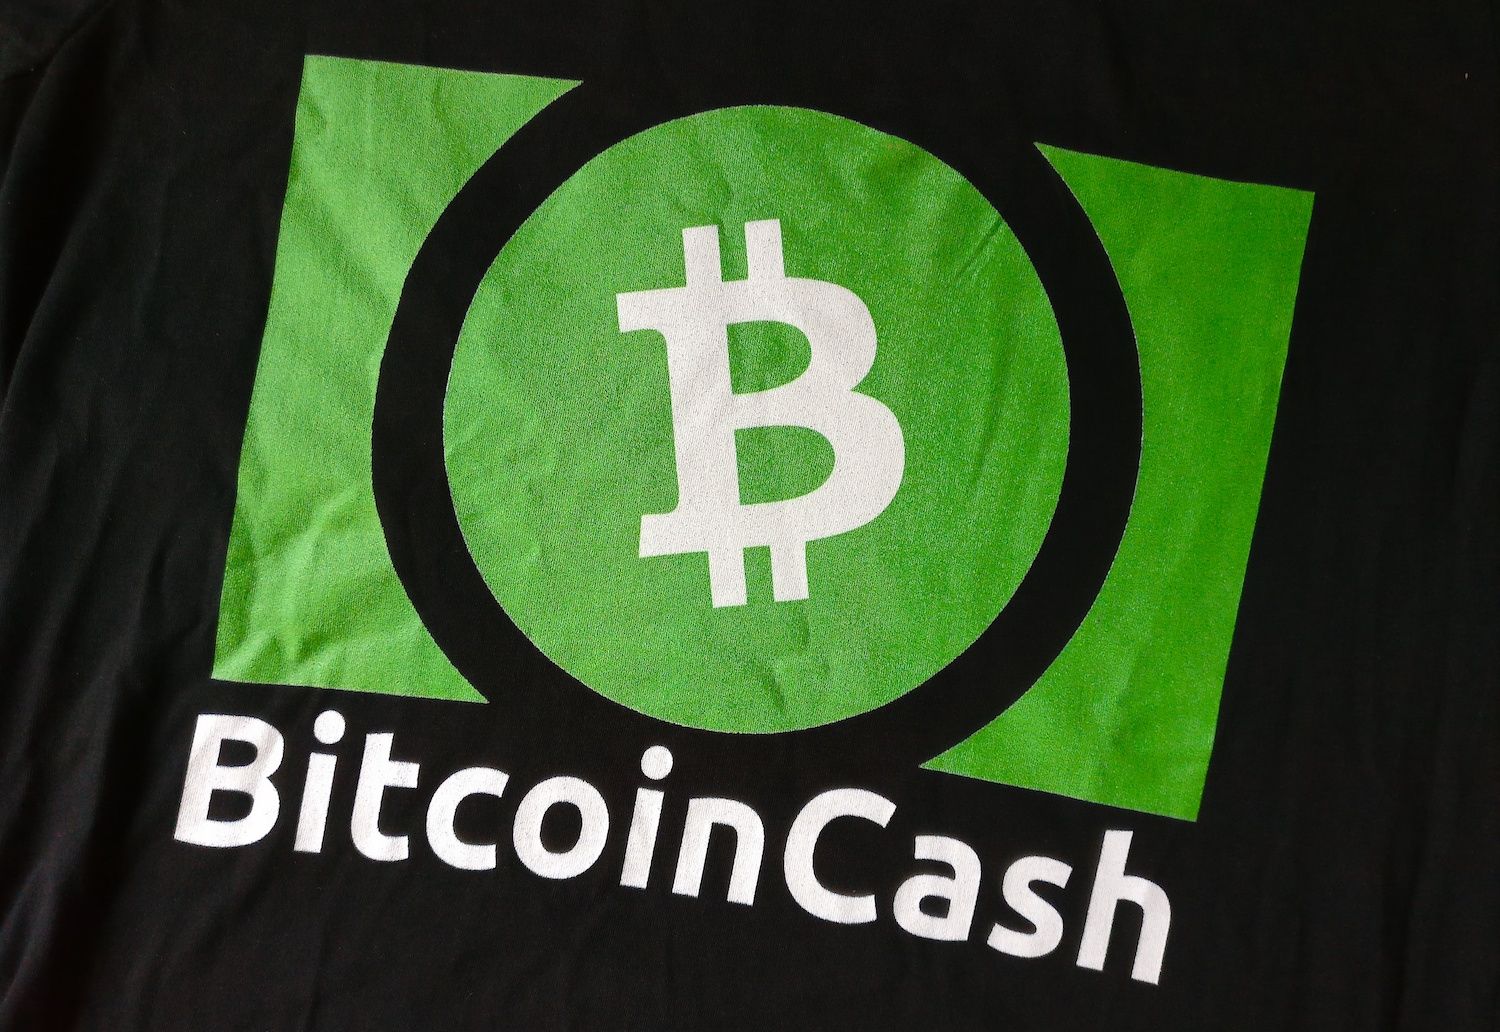 Bitcoin_Cash_green.jpg